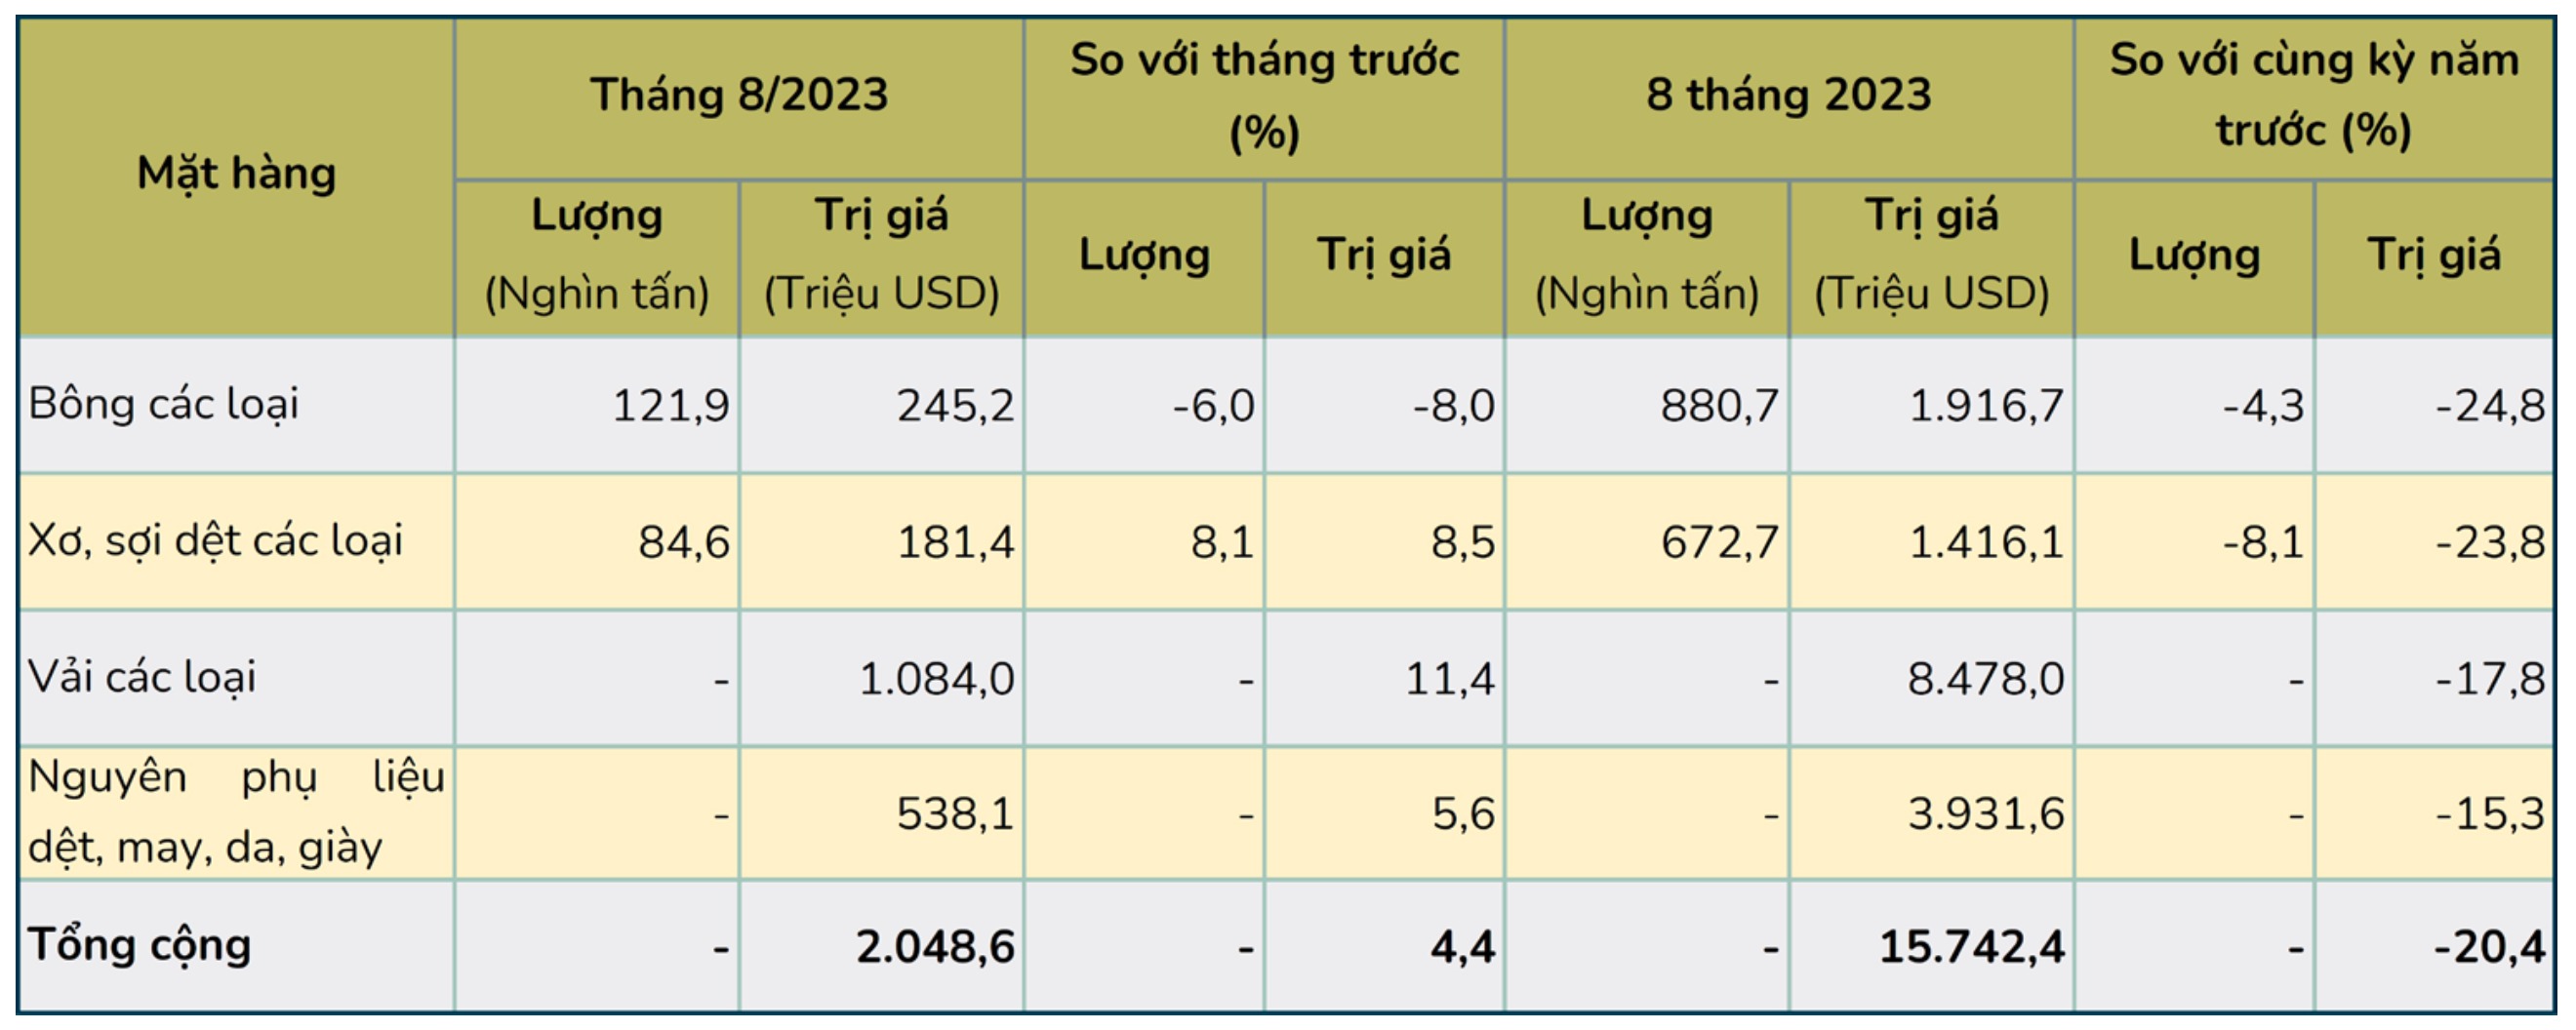 Nhập khẩu bông, xơ sợi, vải, nguyên phụ liệu dệt may, da giày của Việt Nam 8 tháng năm 2023